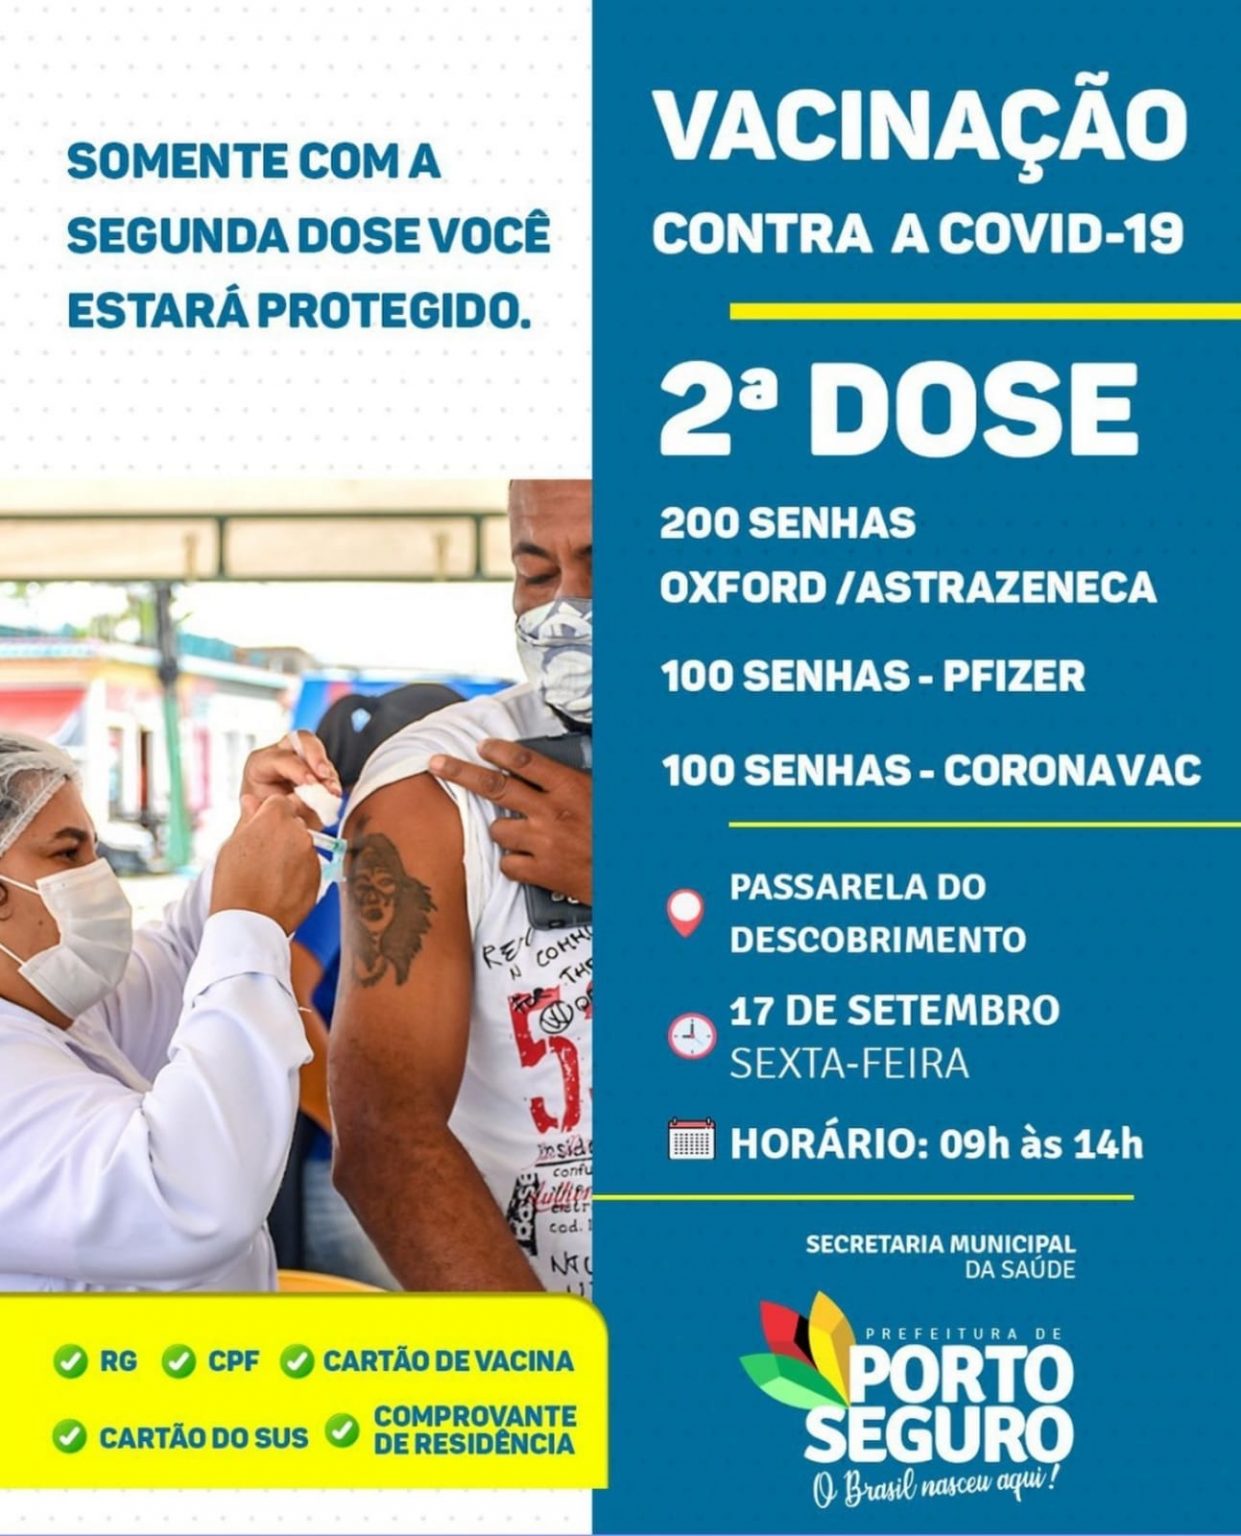 2ª dose de vacina contra Covid-19 em Porto Seguro, dia 17/9 6